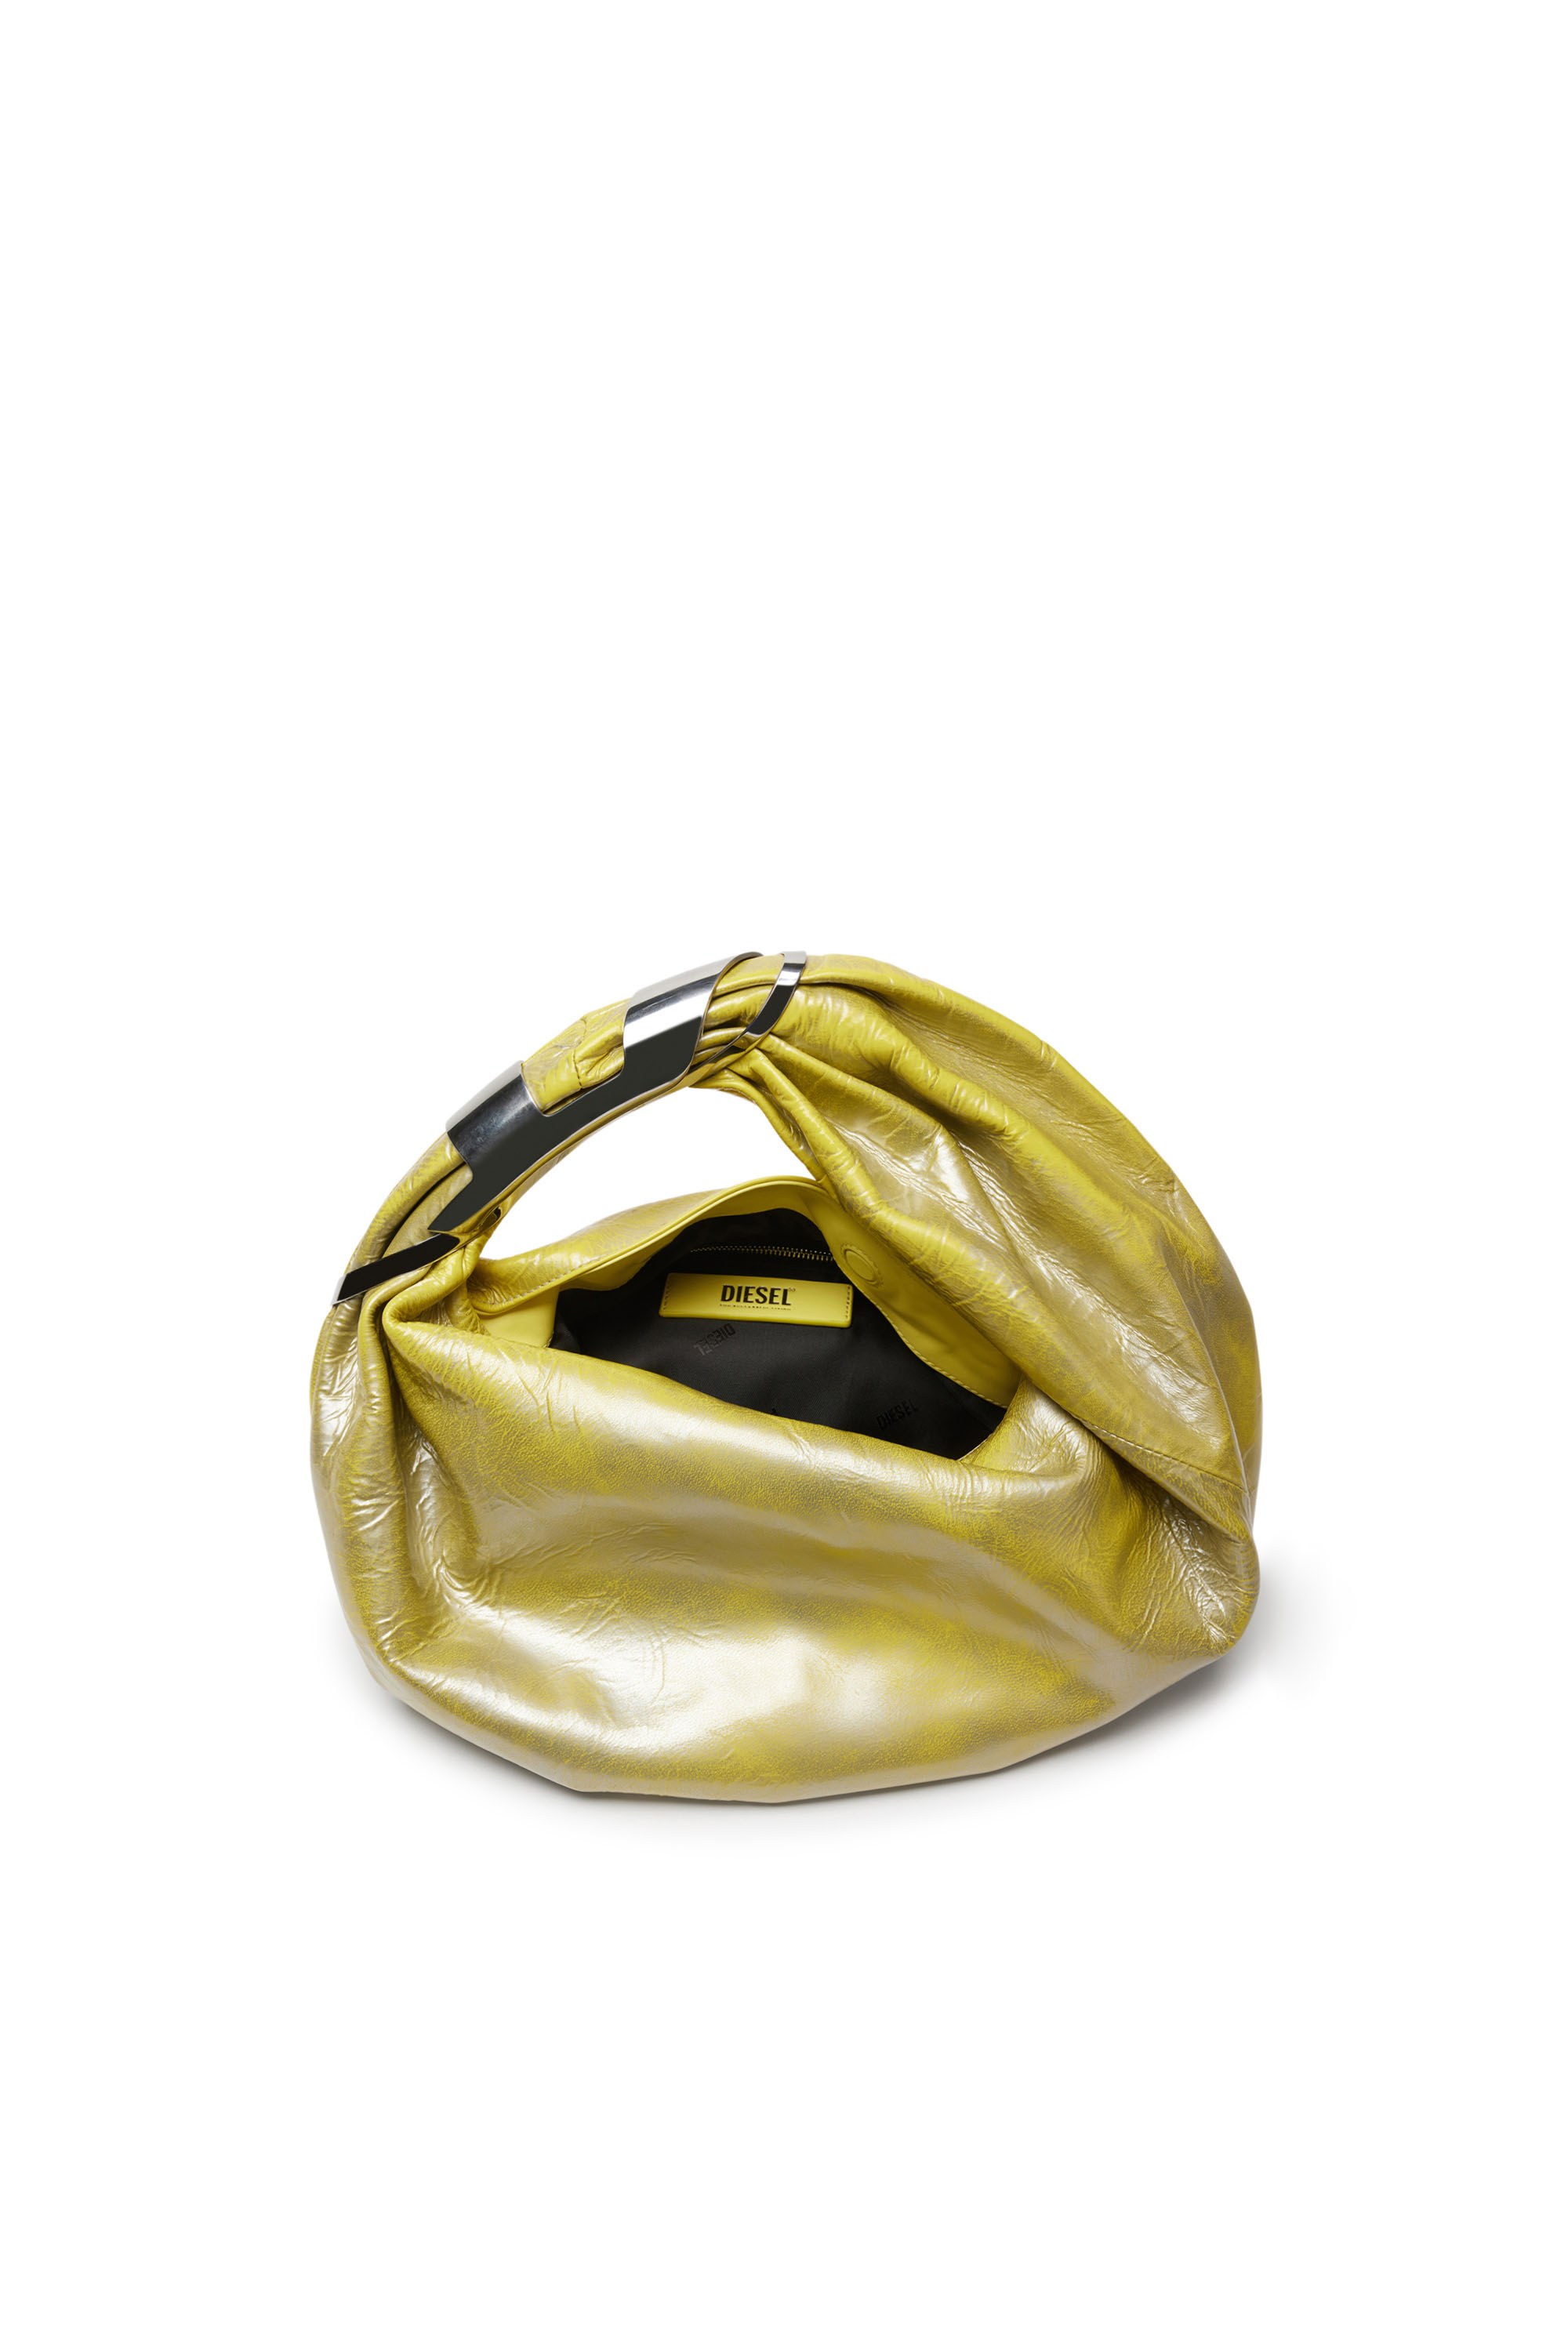 Diesel - GRAB-D HOBO S, Female Grab-D S-Hobo bag in metallic leather in イエロー - Image 4